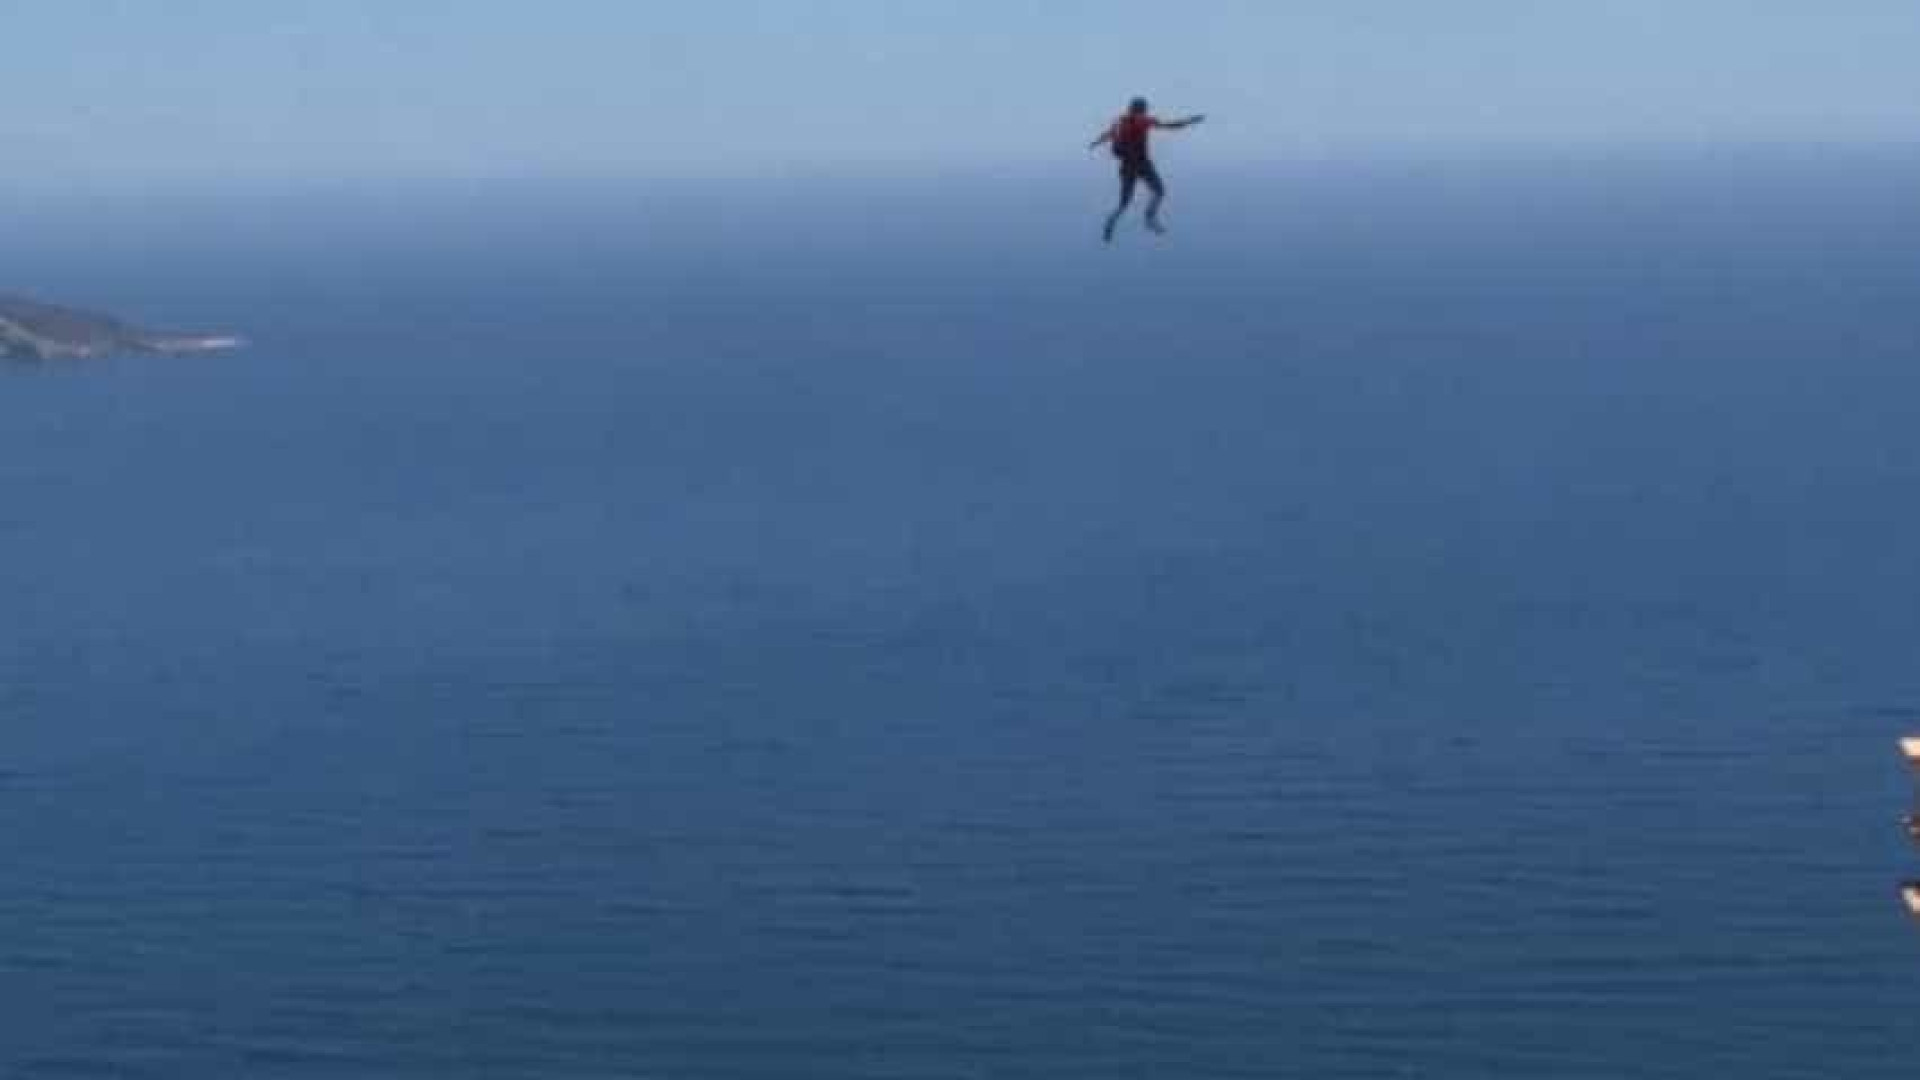 Skydivers fazem base jumping num monumento em obras